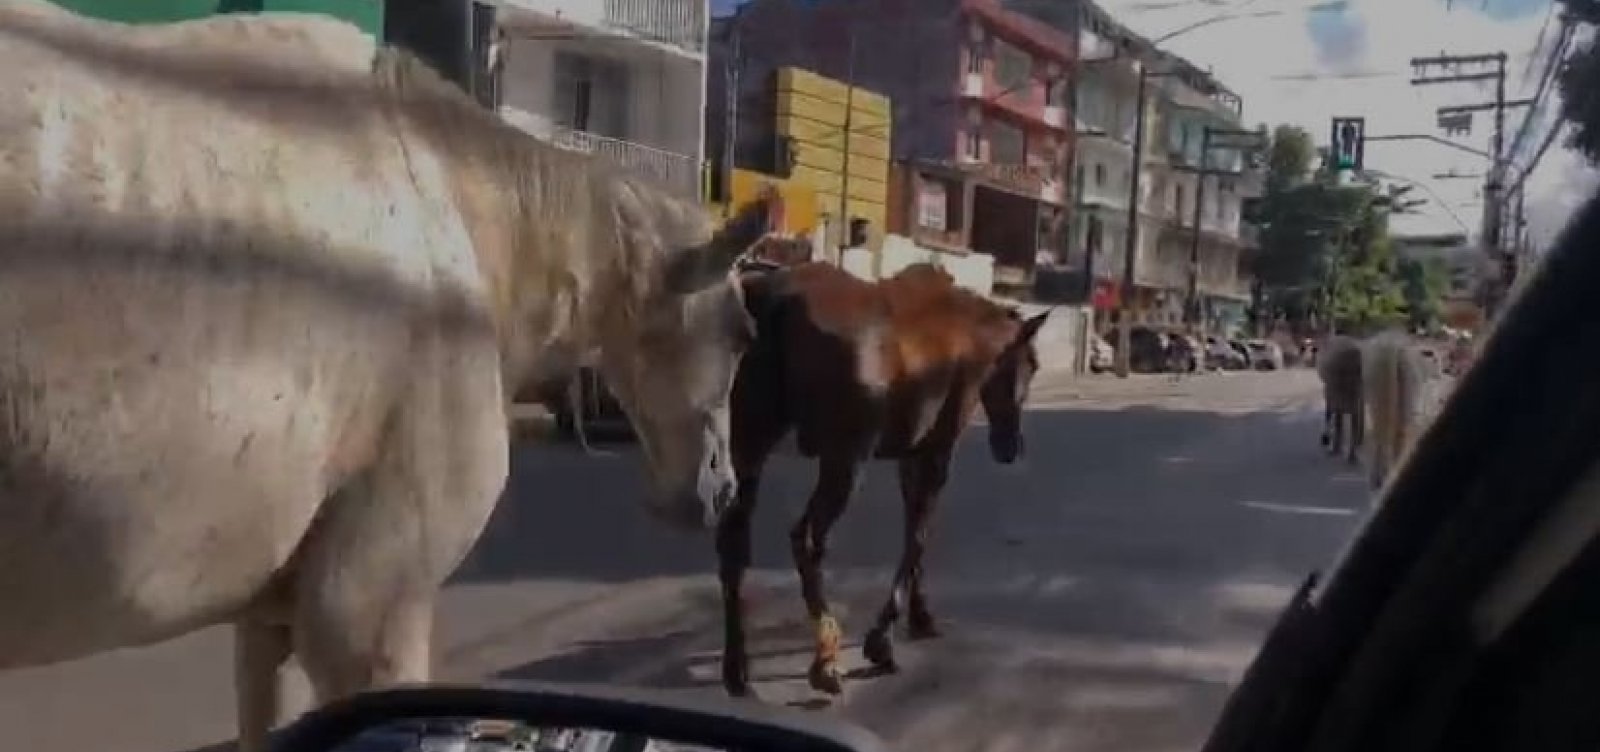 Cavalos desfilam em meio ao trânsito de Pernambués 